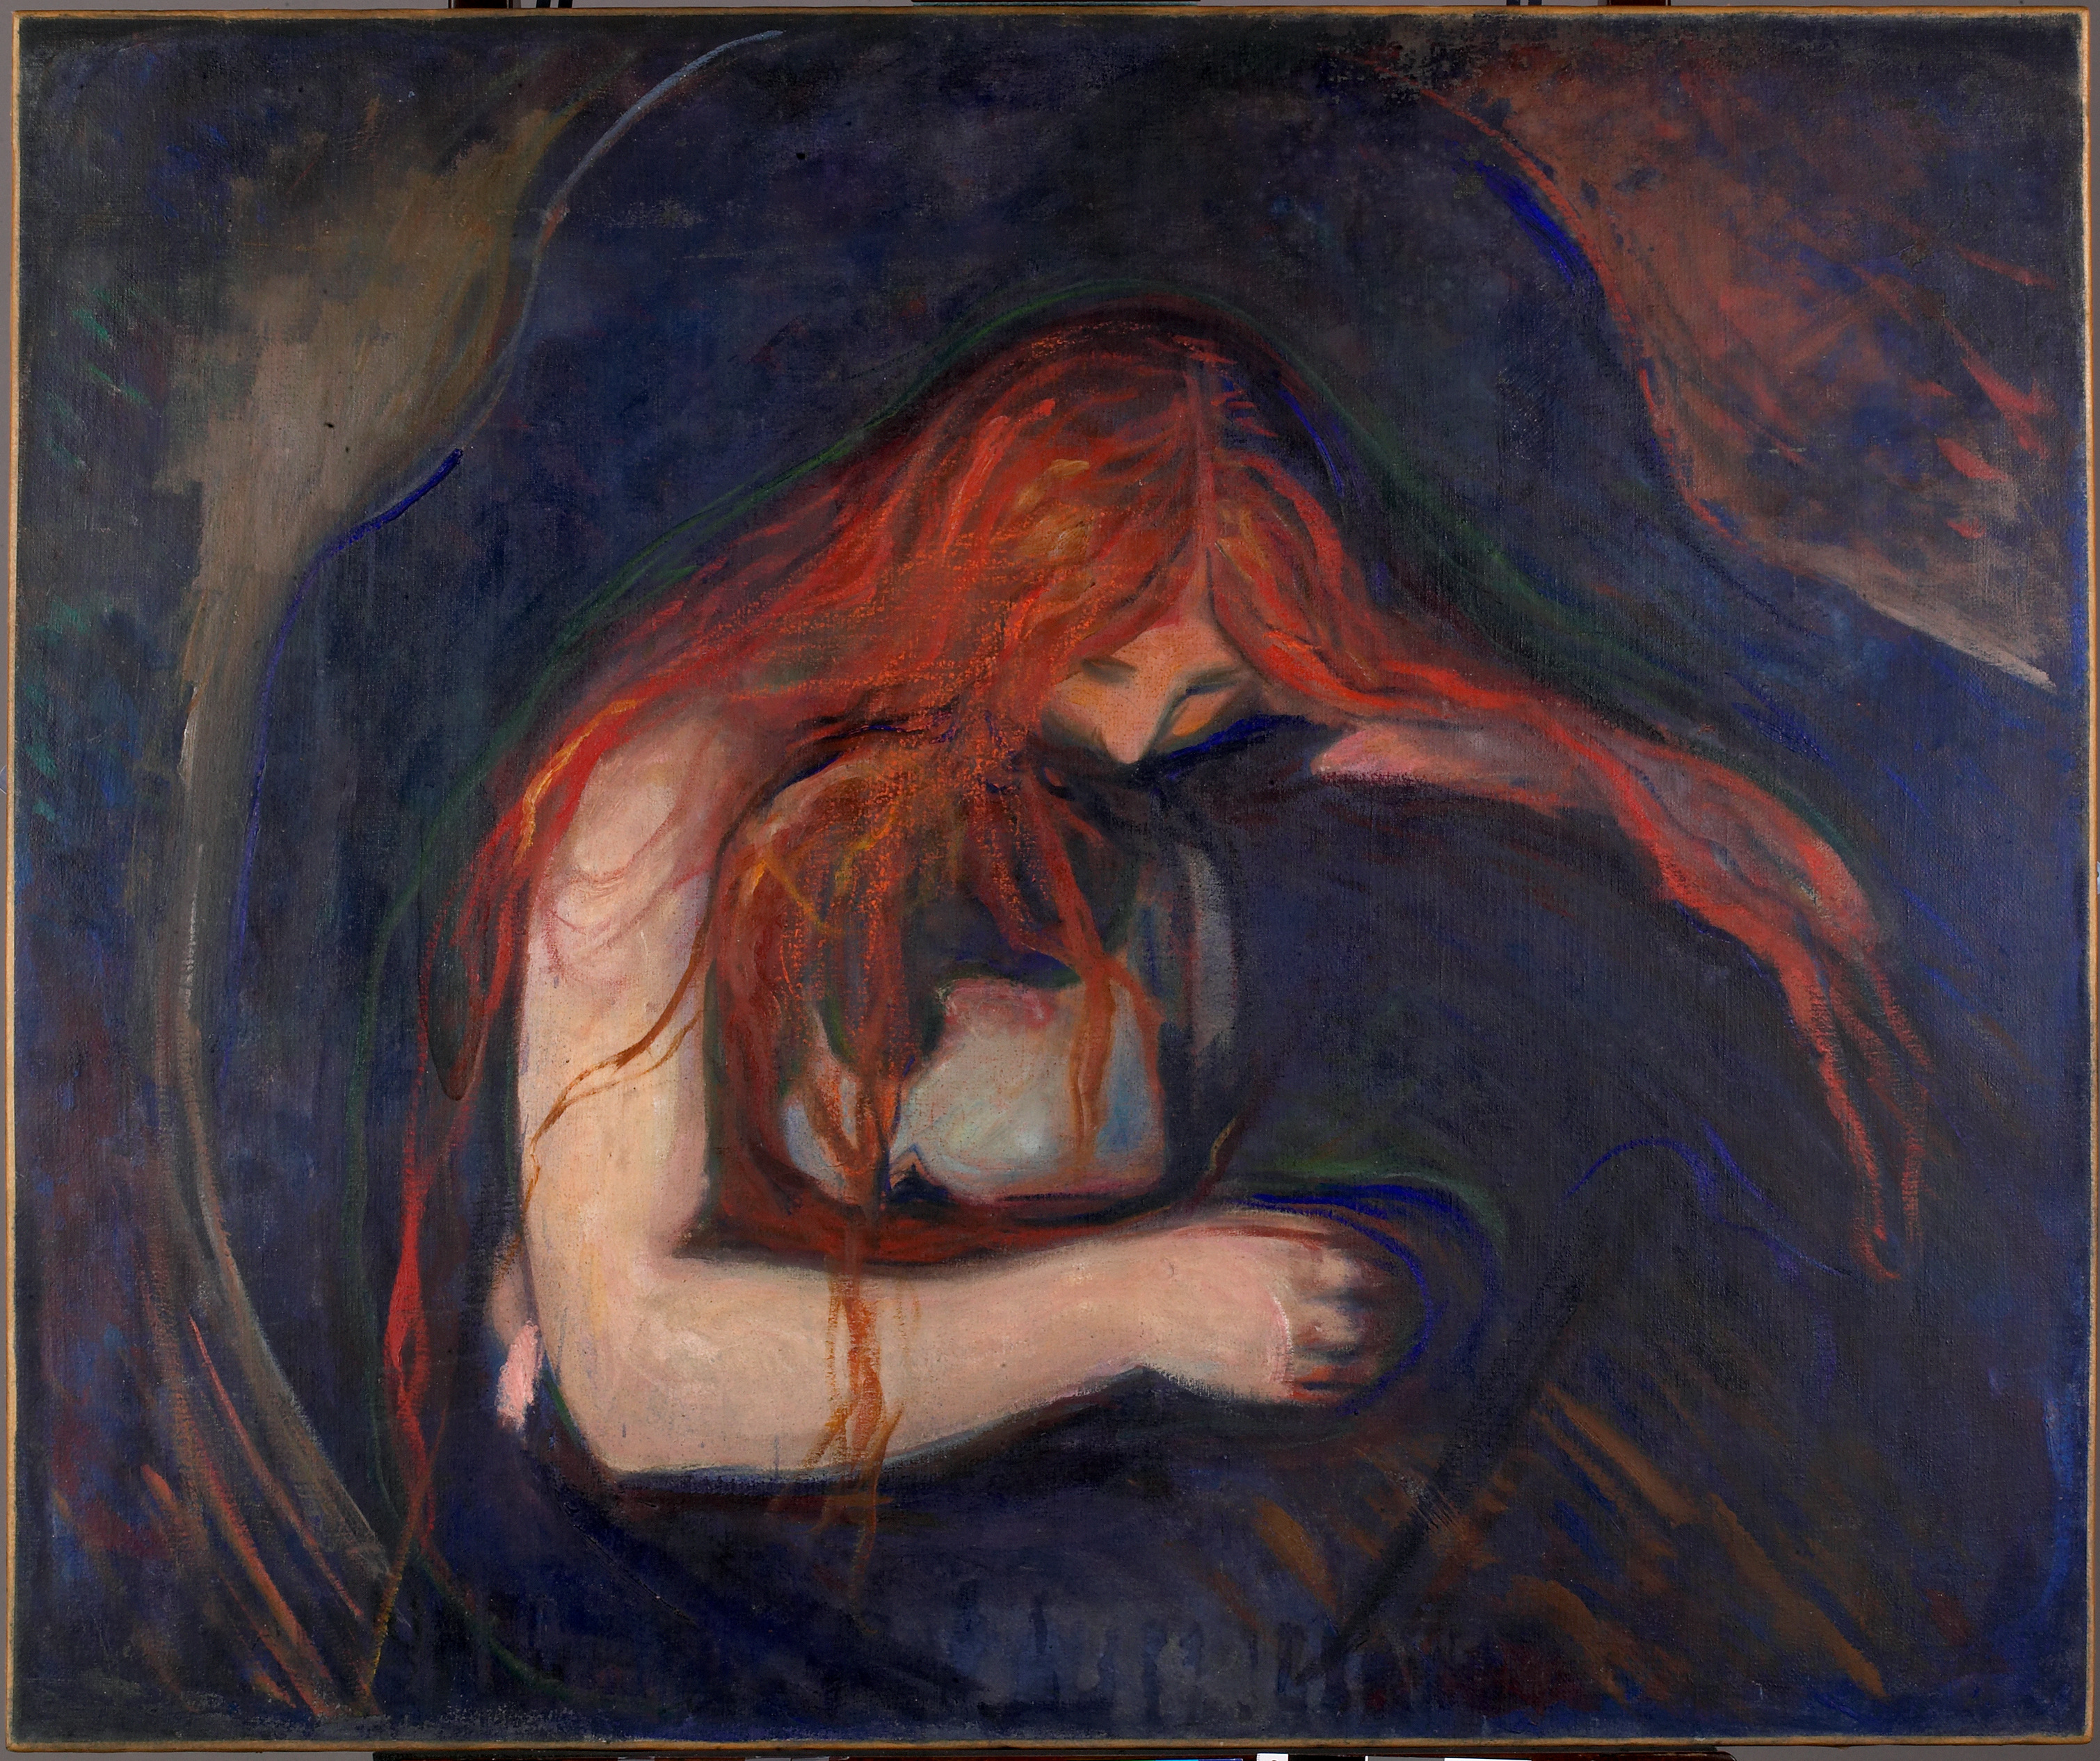 吸血鬼 by Edvard Munch - 1895 